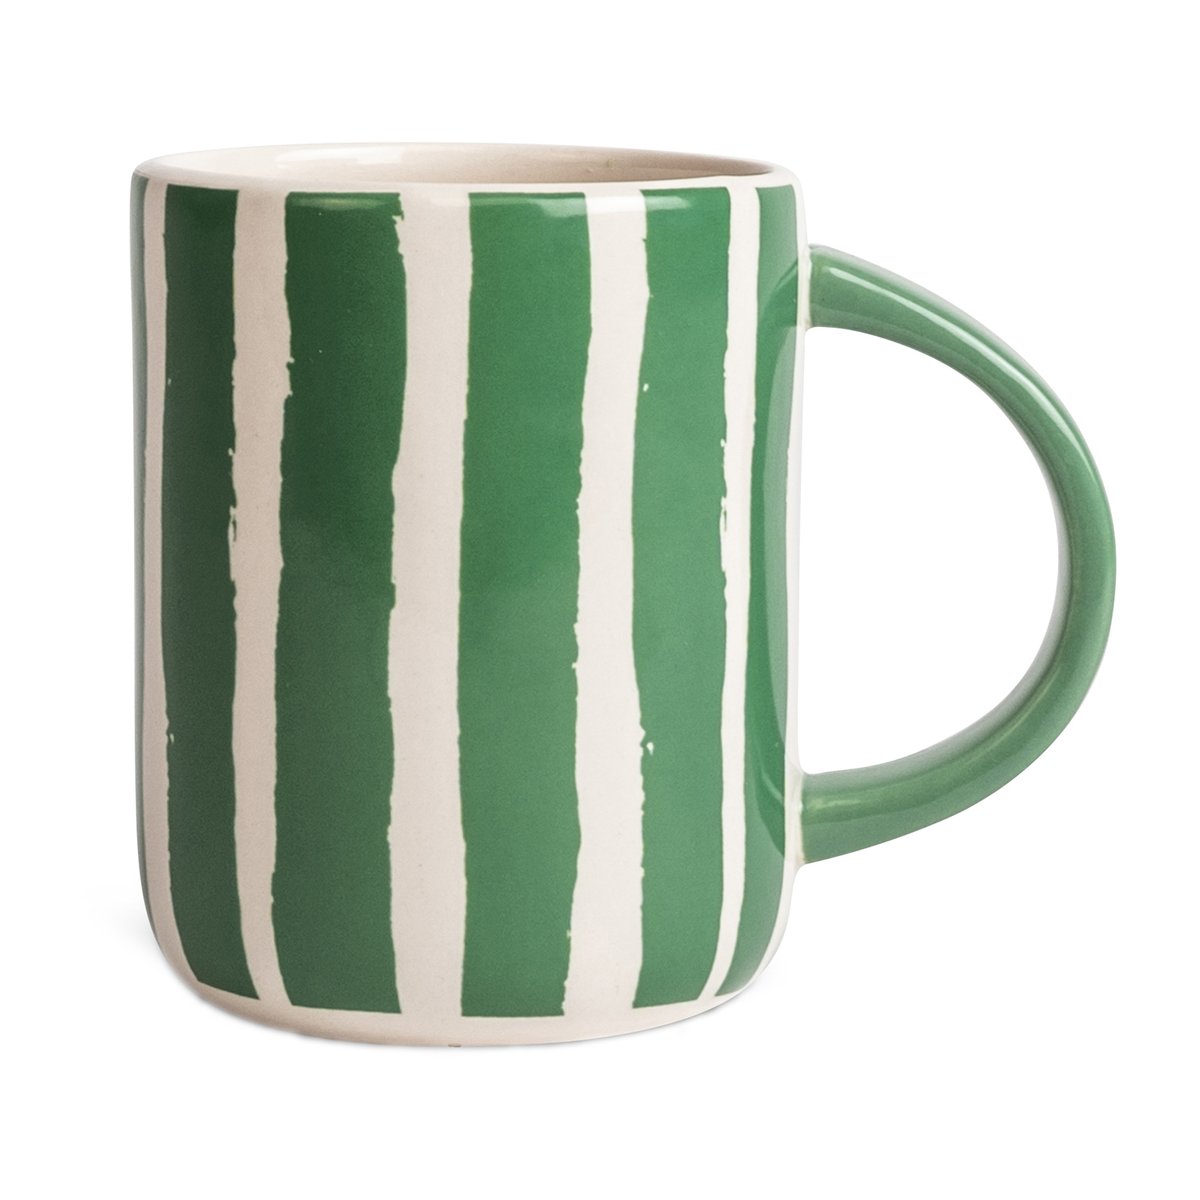 byon mug liz à rayures 28 cl vert-blanc